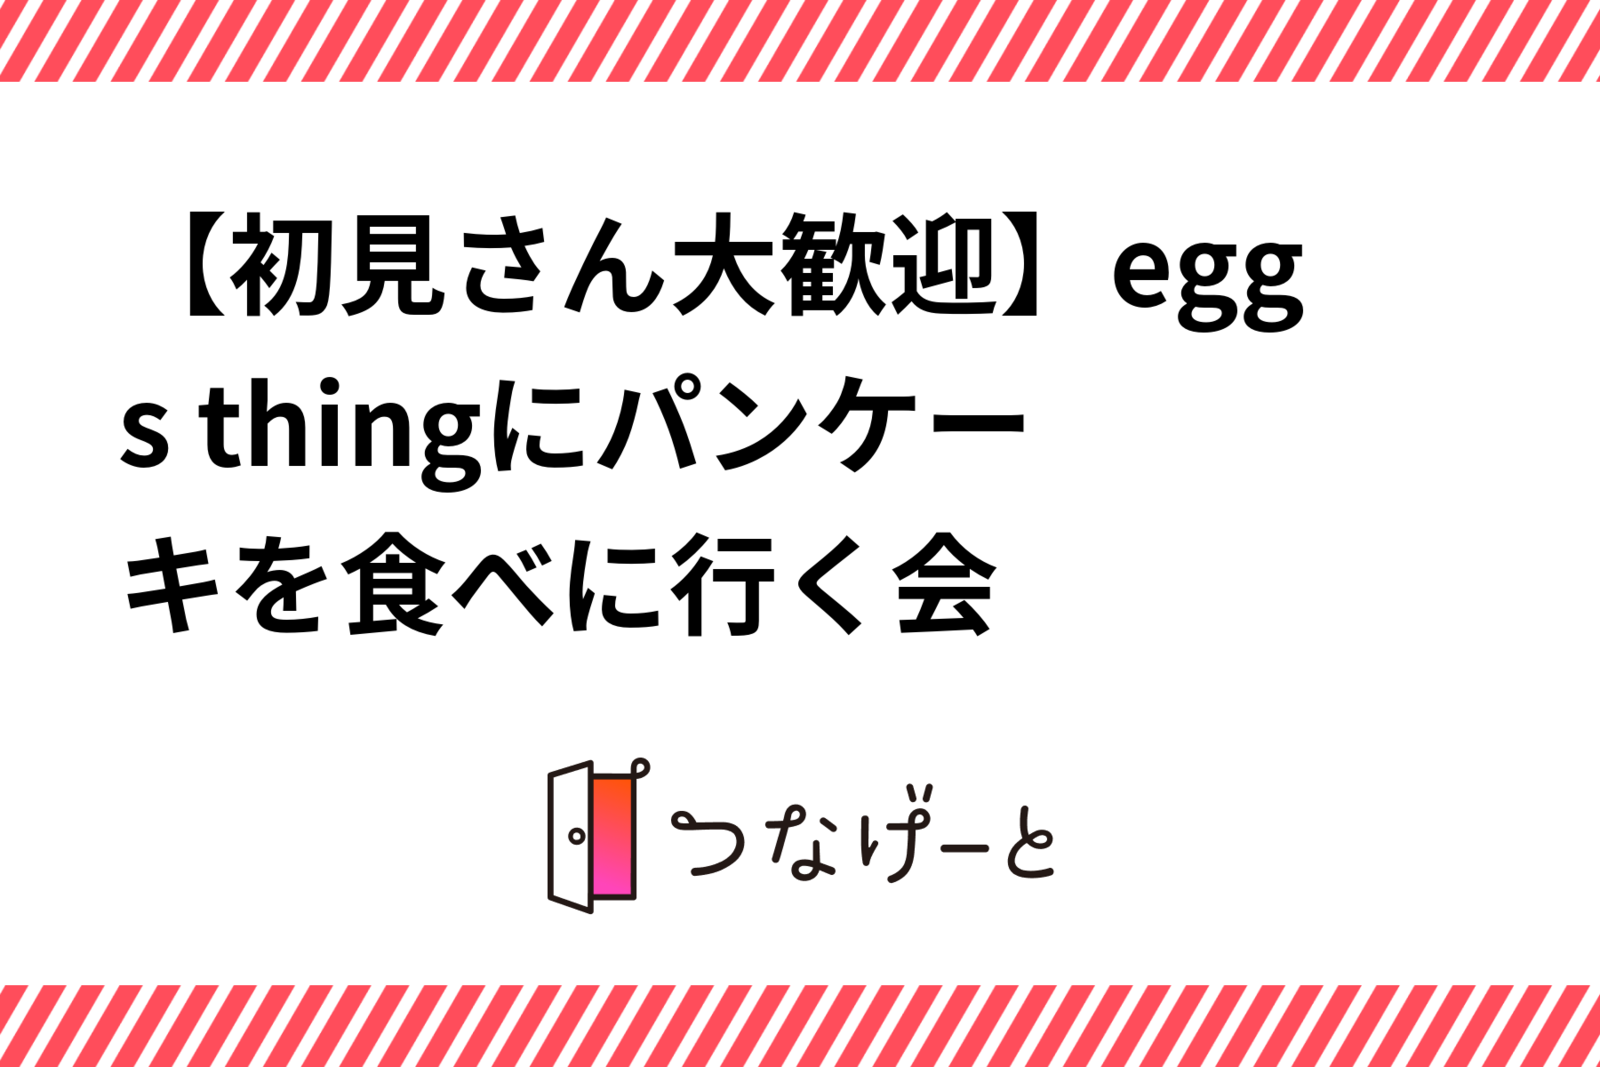 【初見さん大歓迎】egg's thingにパンケーキを食べに行く会